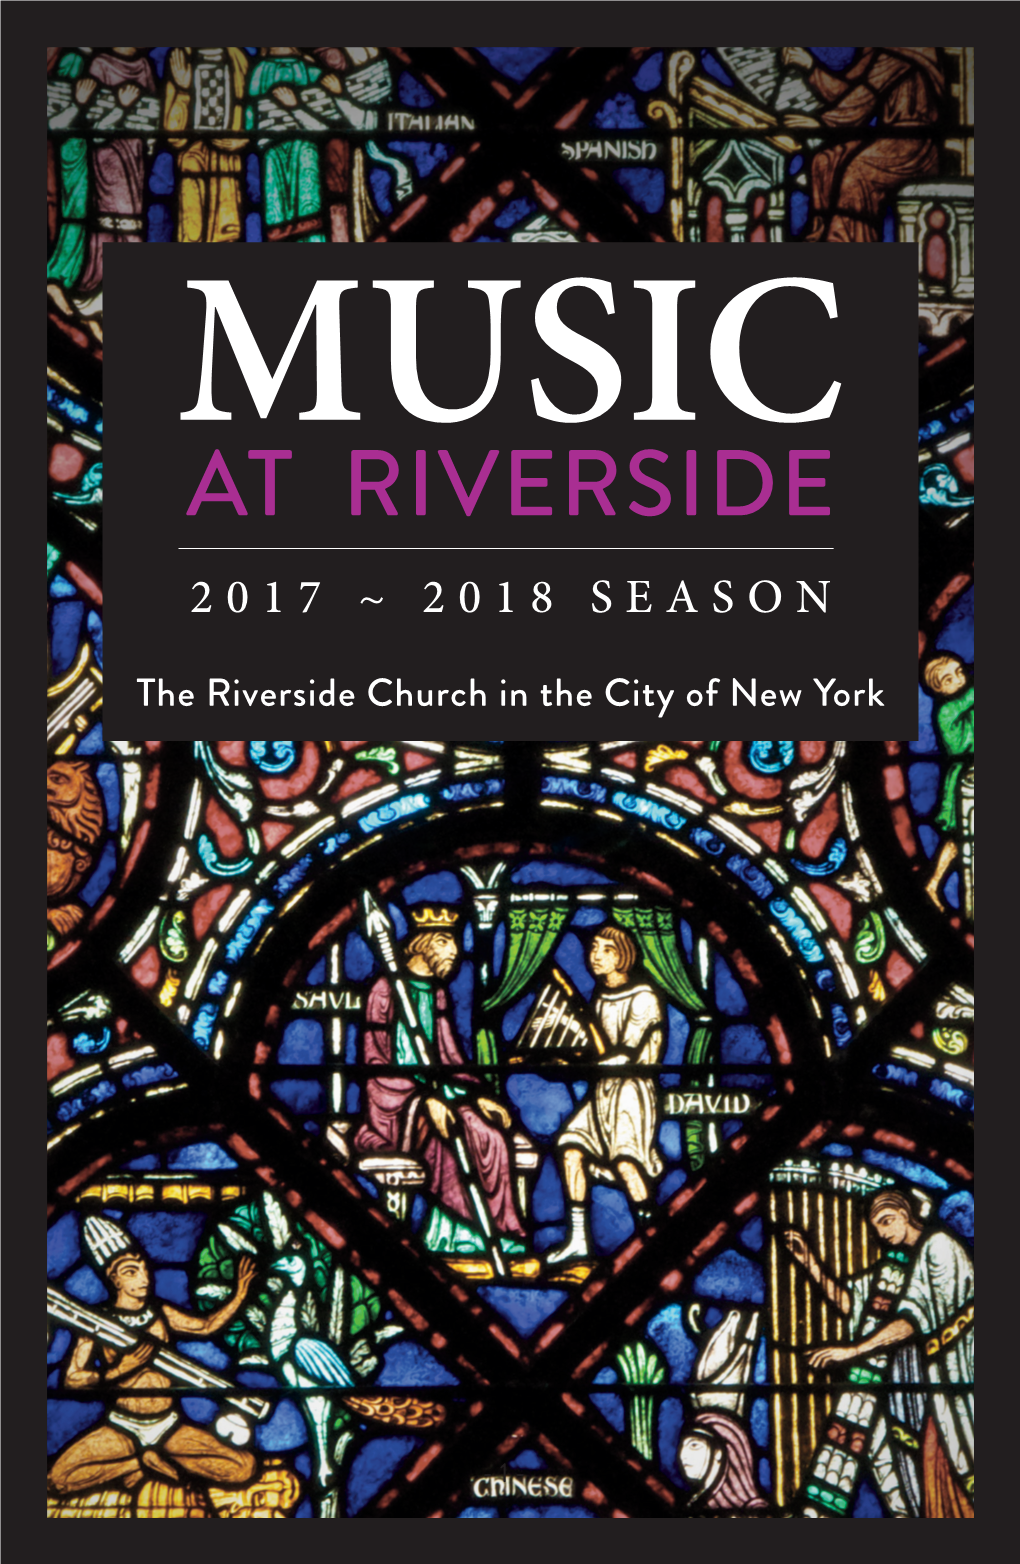 At Riverside 2017 ~ 2018 Season